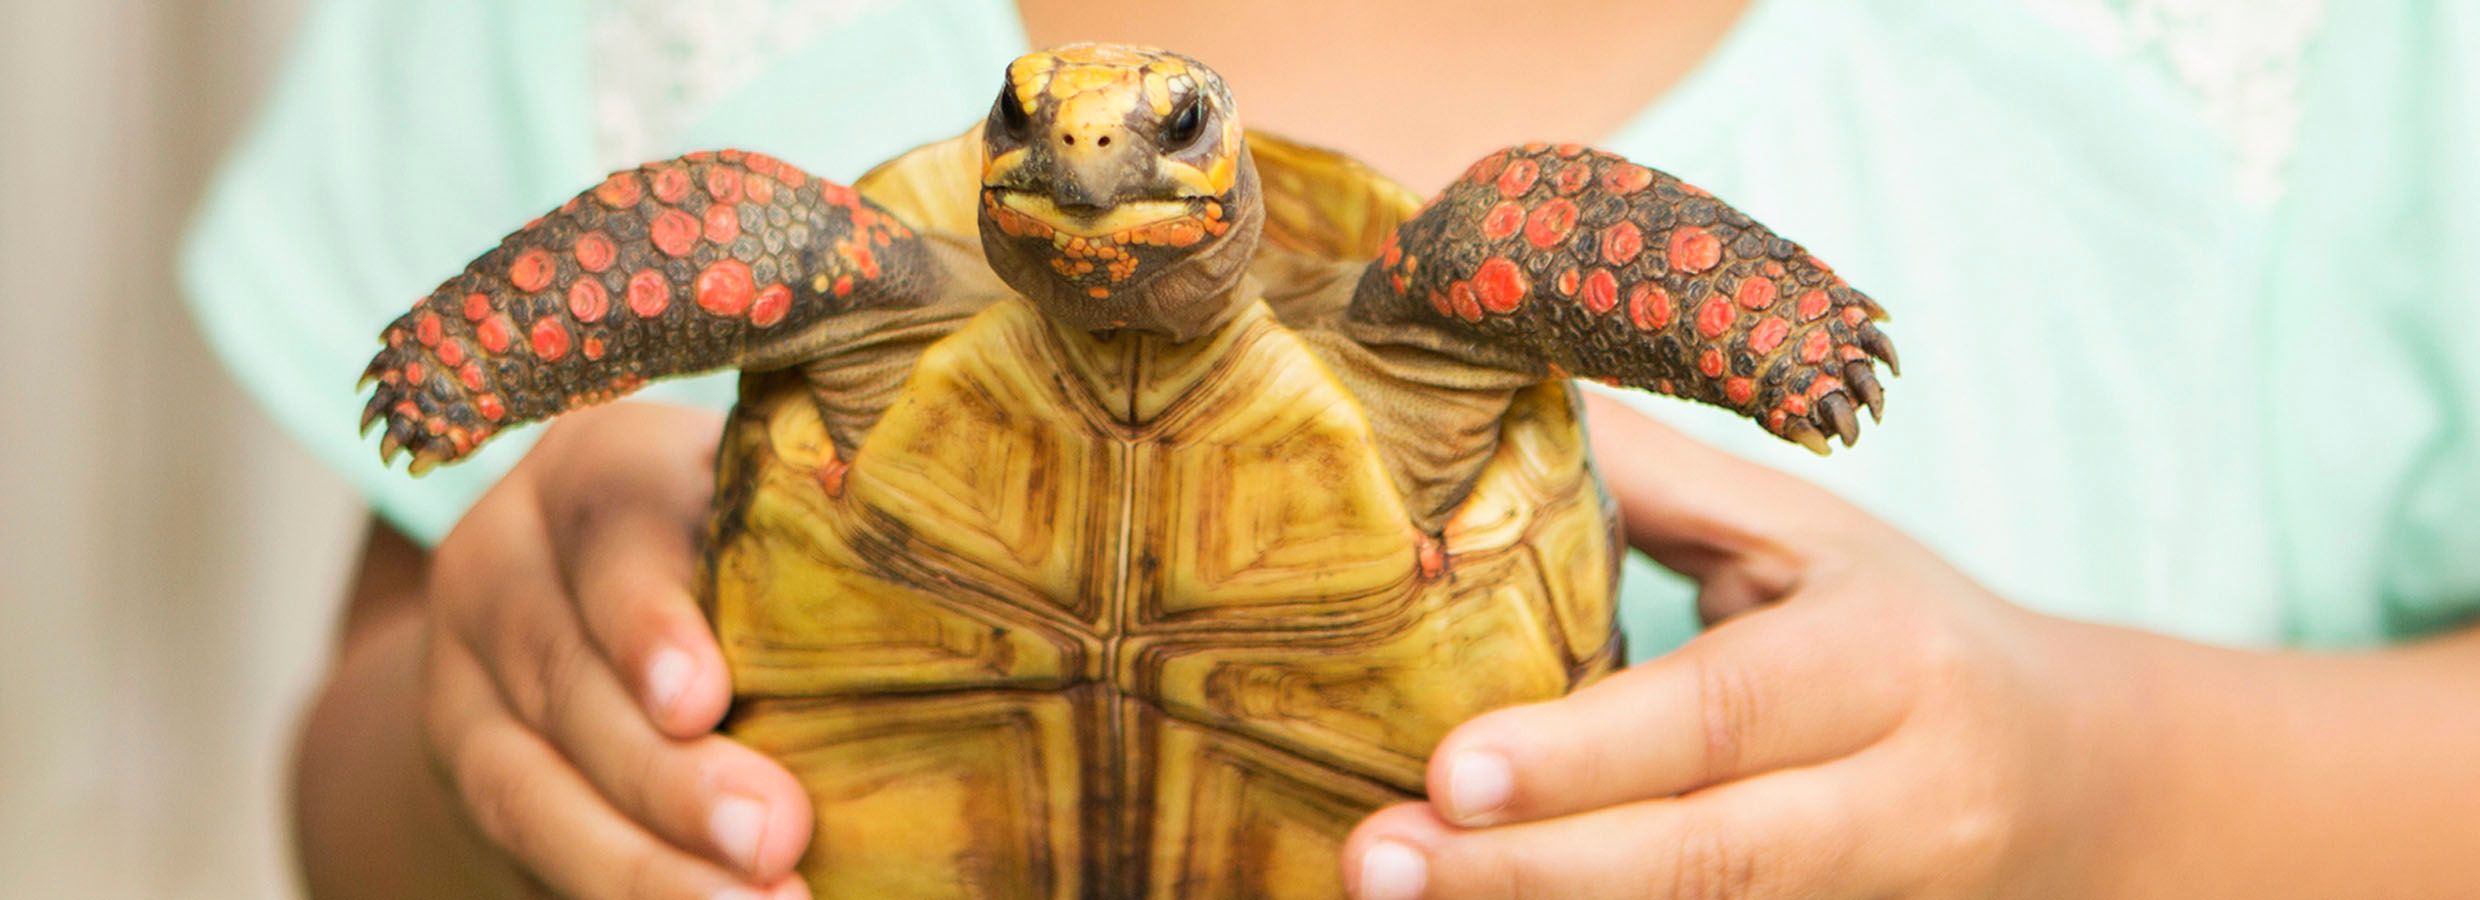 petsmart sell turtles